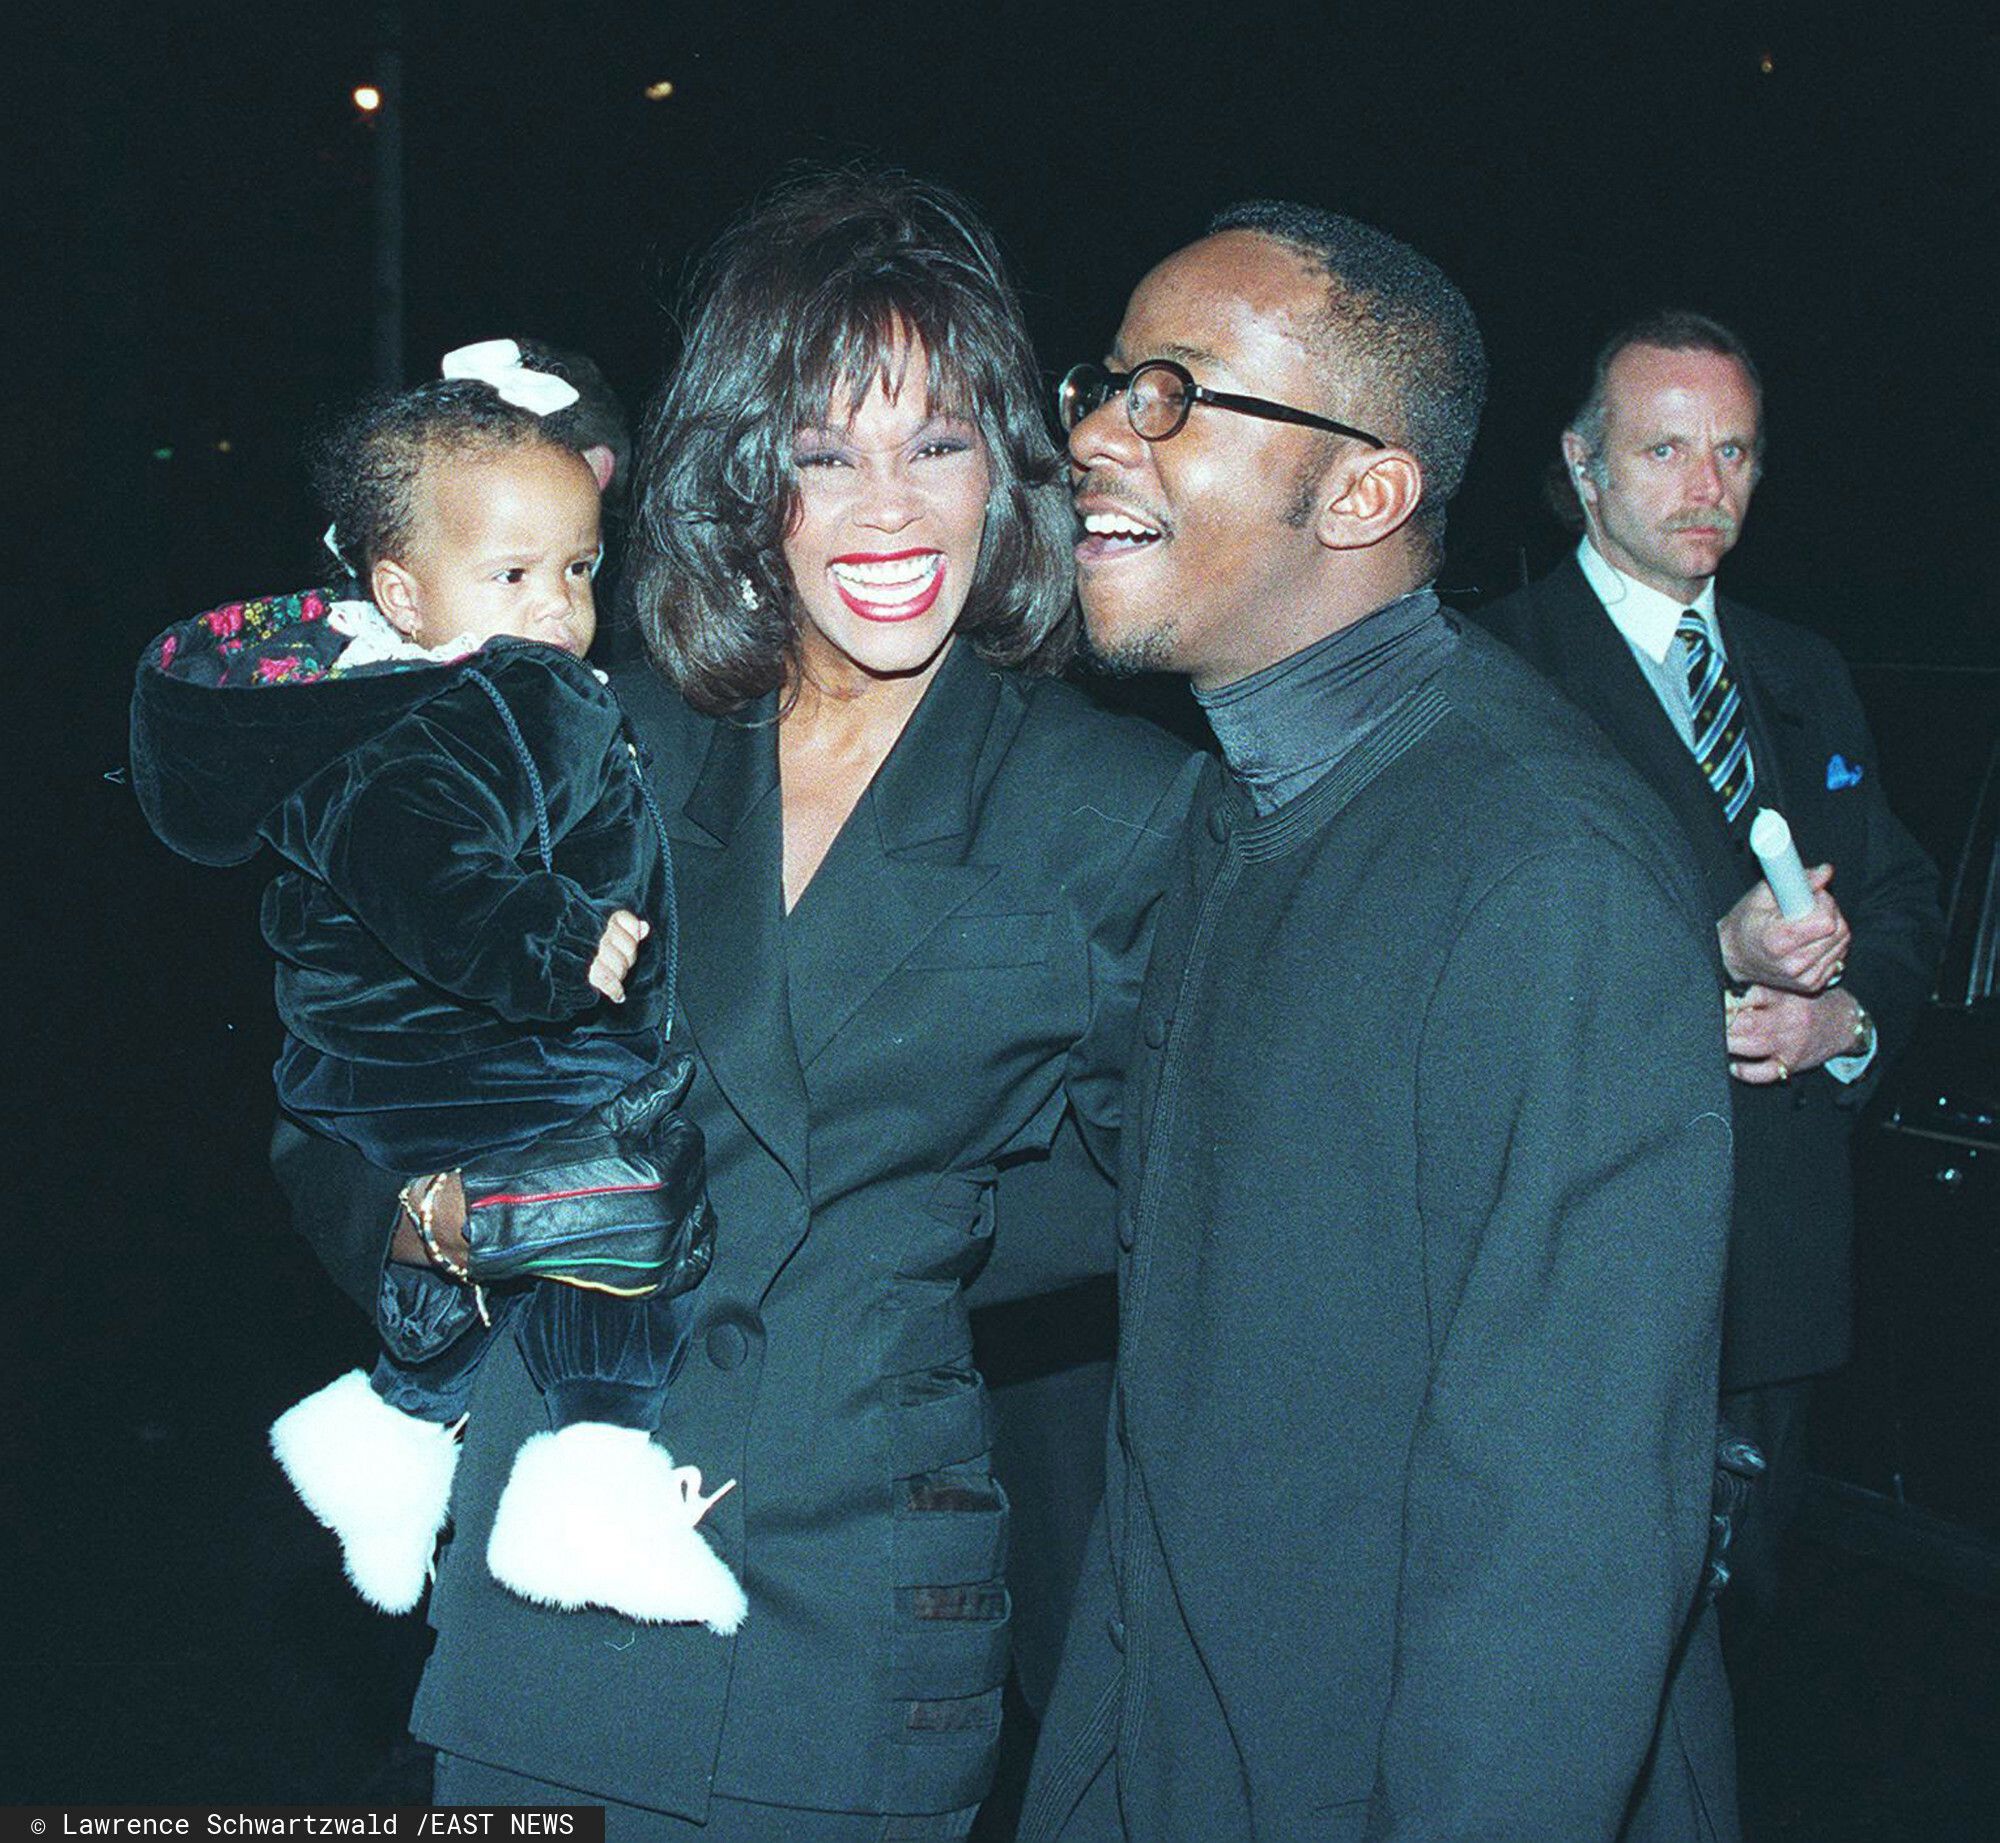 Whitney Houston.jpg